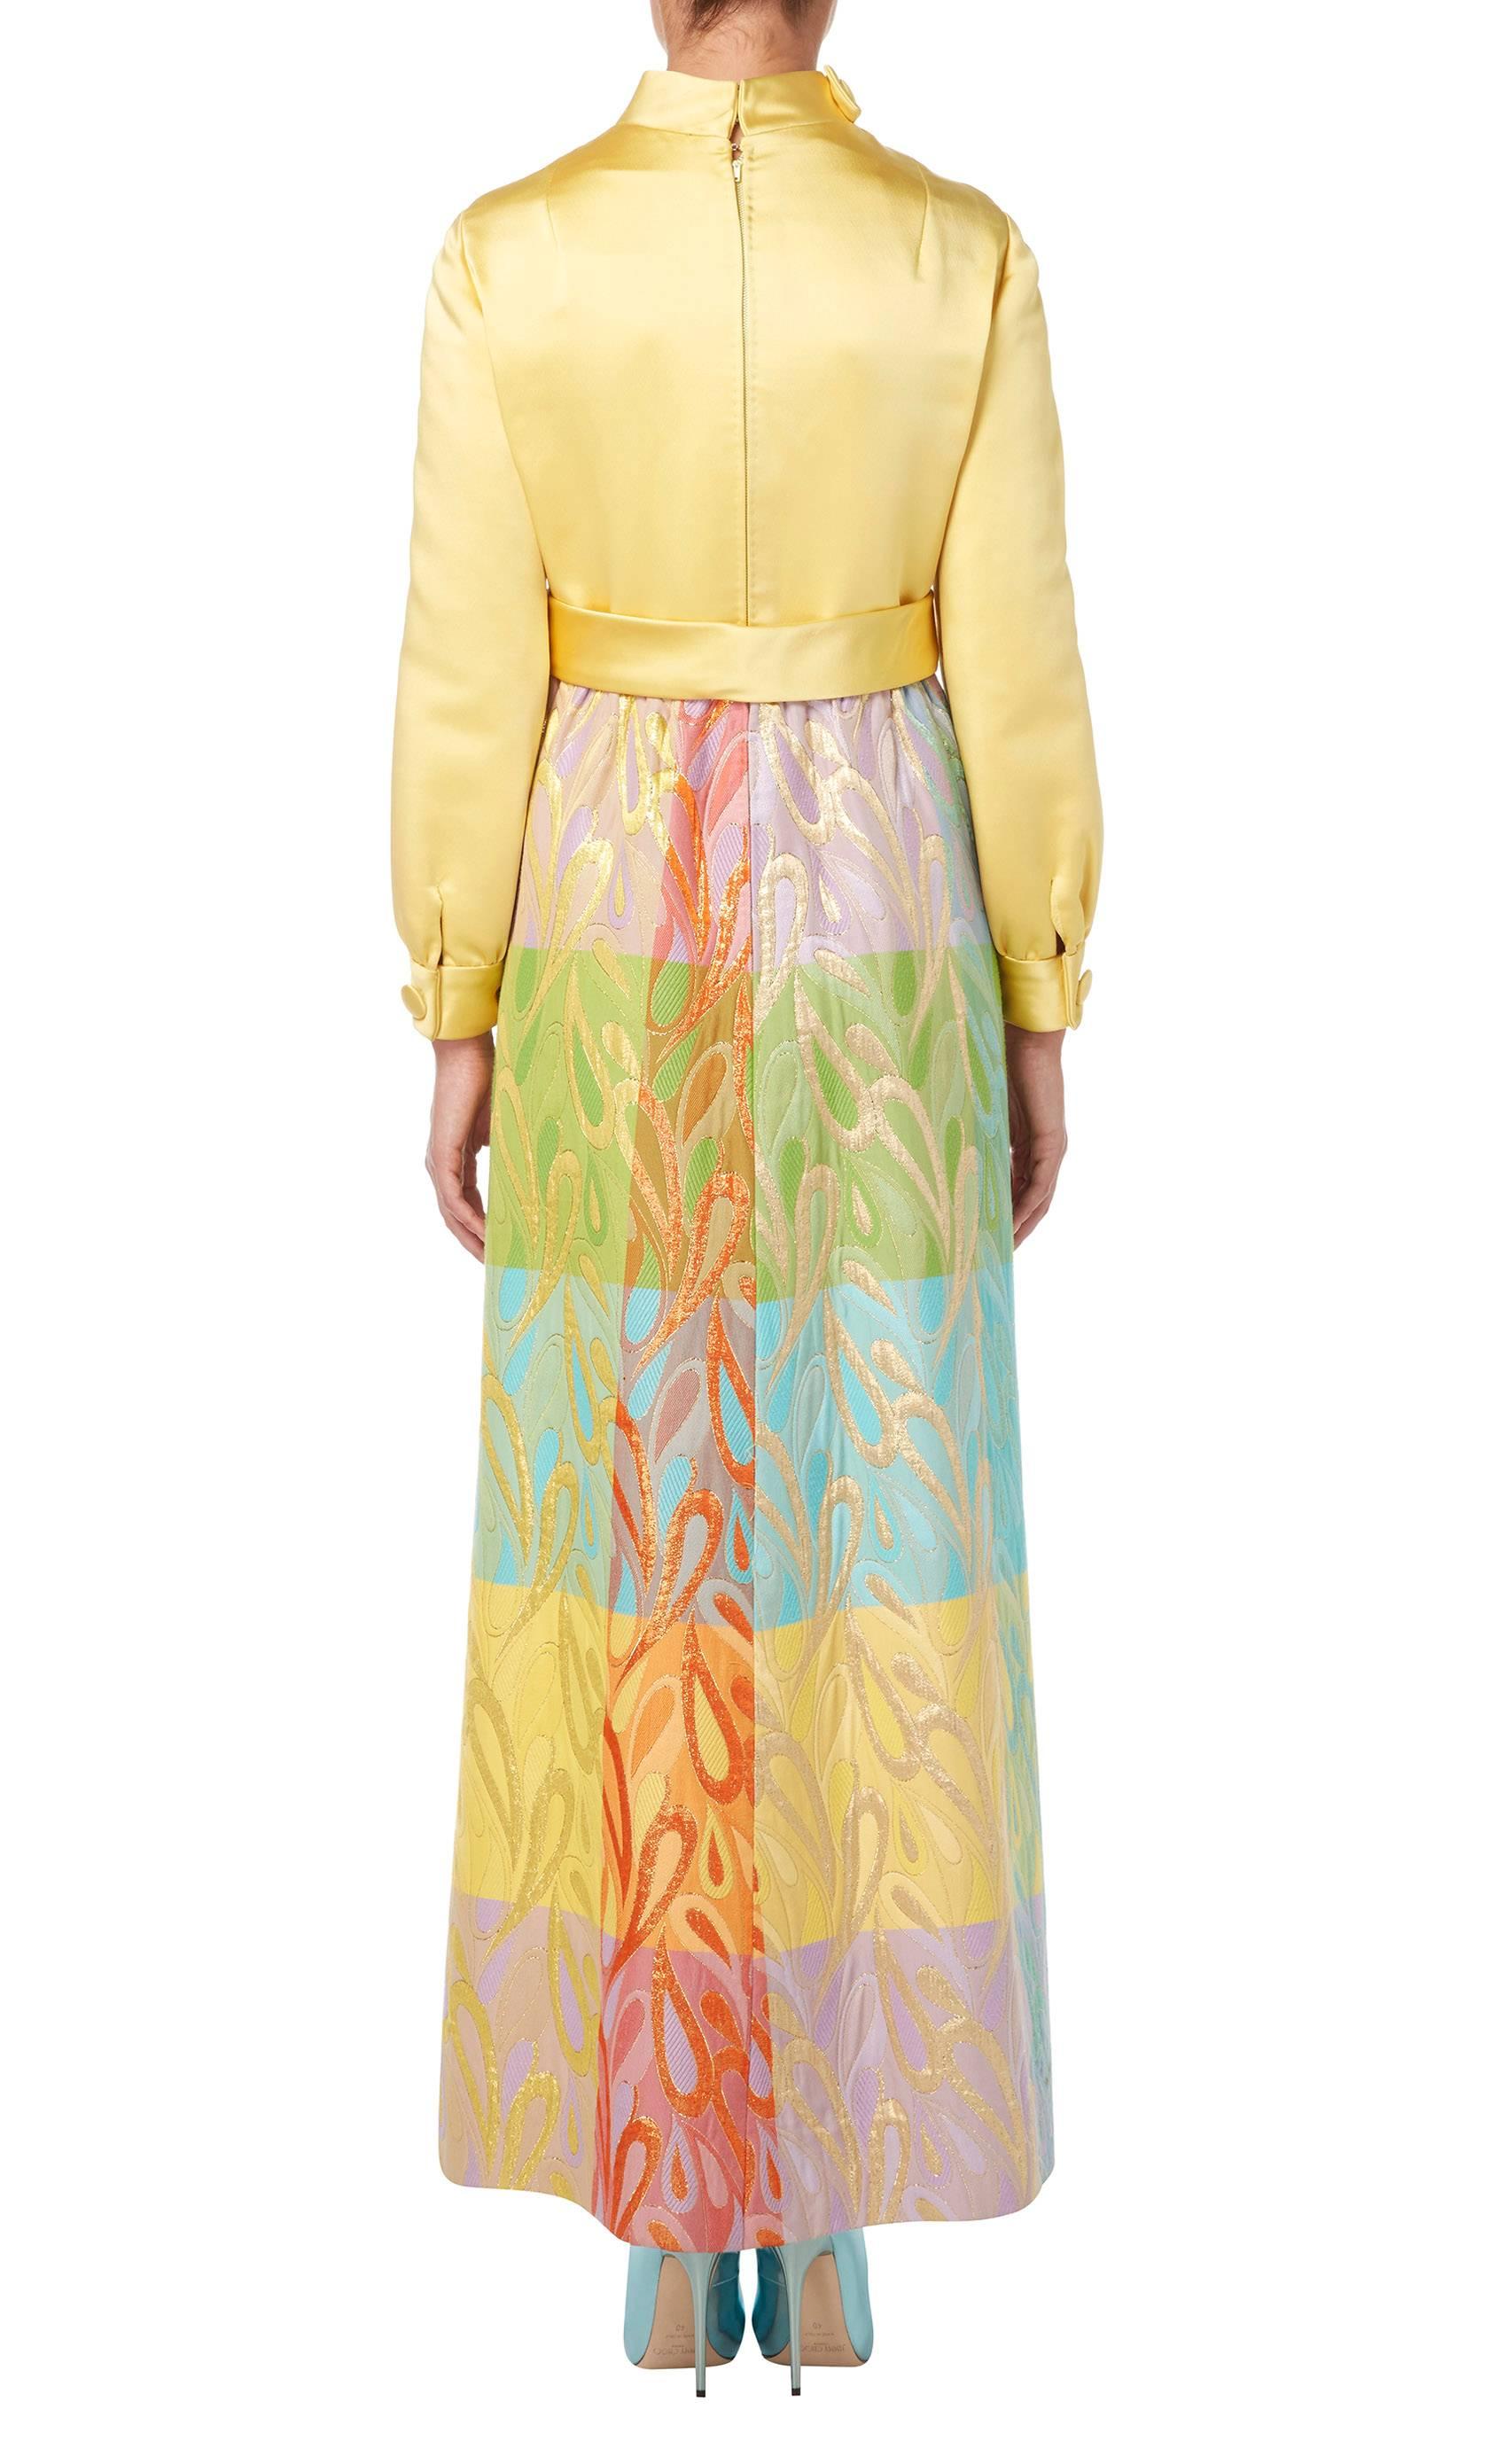 Beige Malcolm Starr multicoloured dress, circa 1968